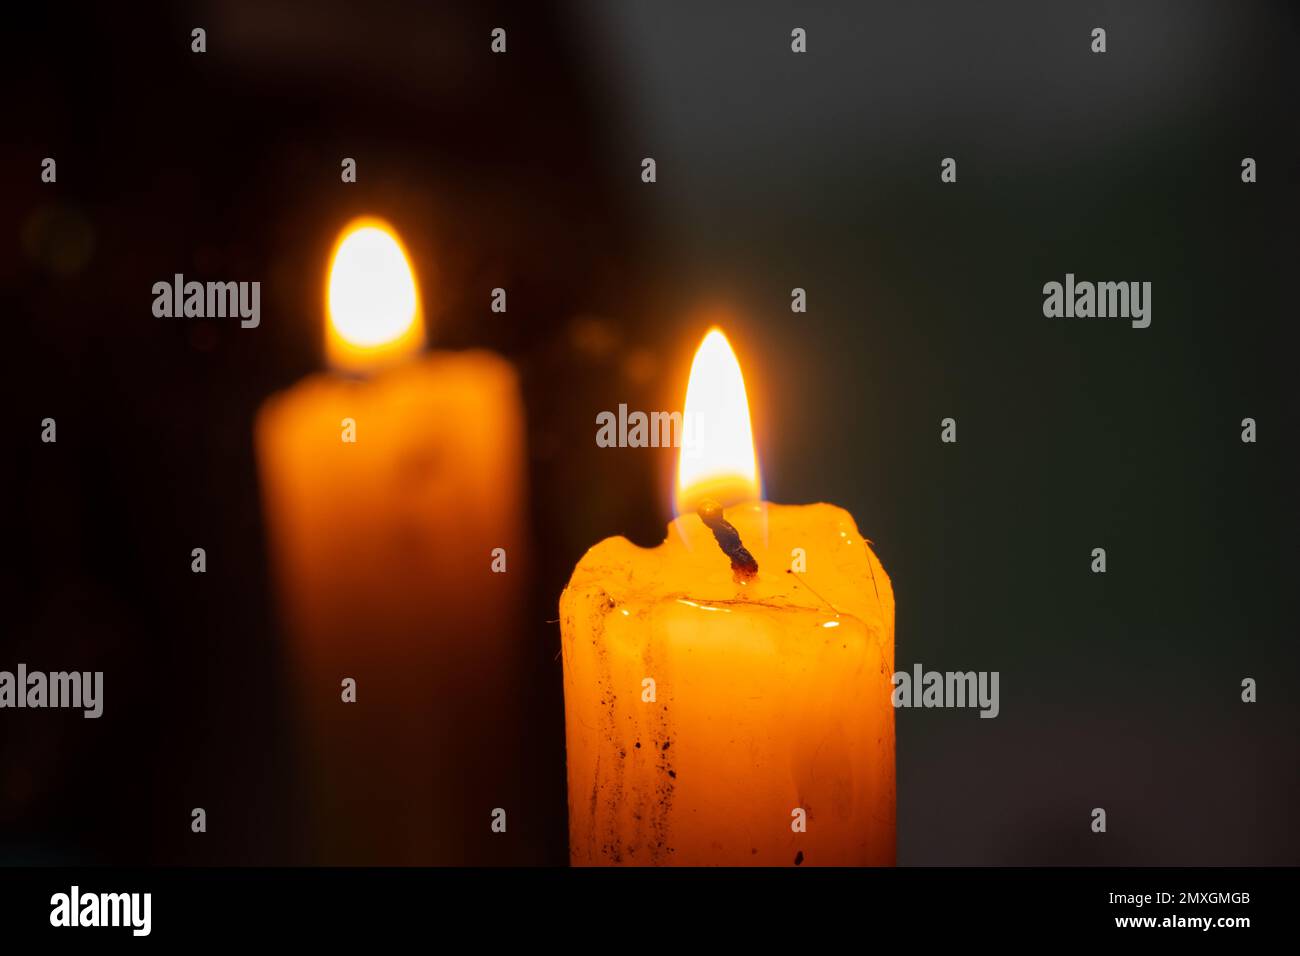 Kerzenfeuer und Rückspiegelung einer Kerze im Spiegel Stockfotografie -  Alamy